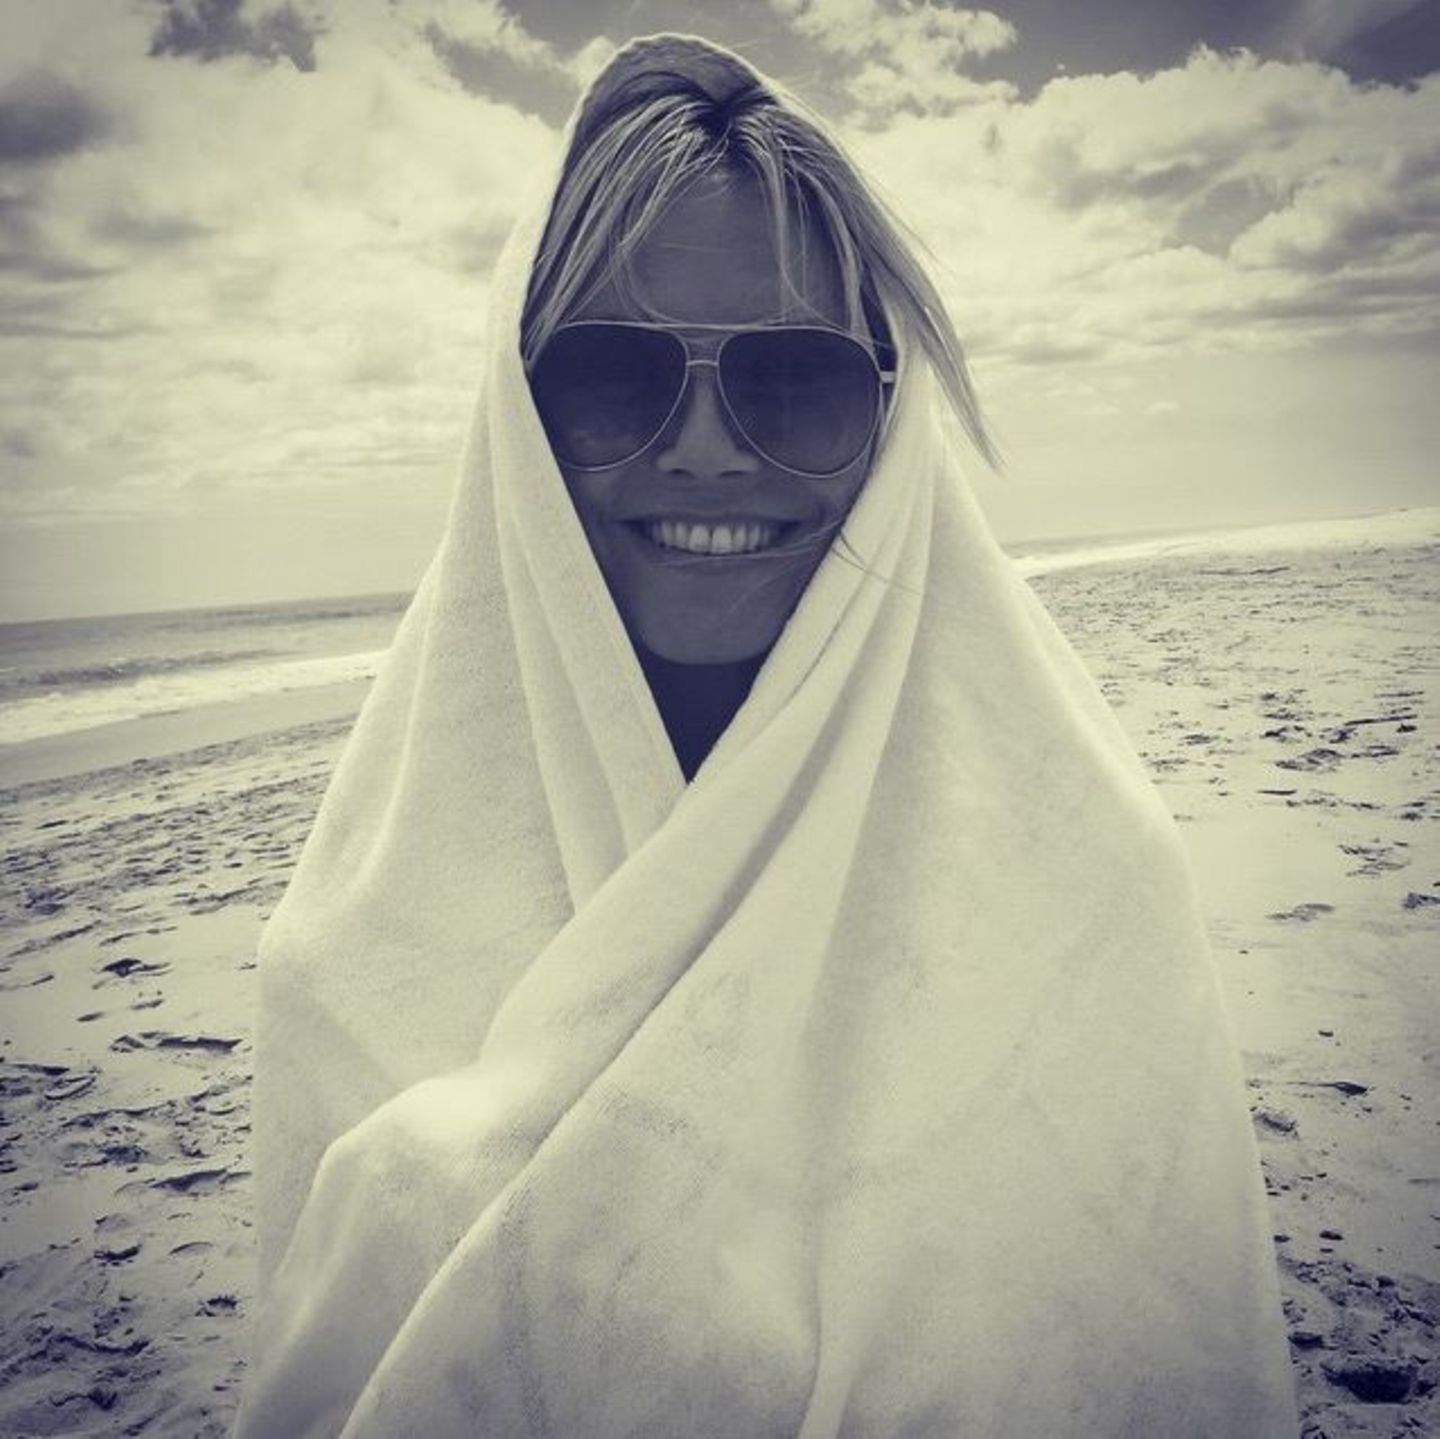 Spielt Heidi Klum am Strand mit ihrem Handtuch eine Szene aus einem berühmten Steven Spielberg Film nach?